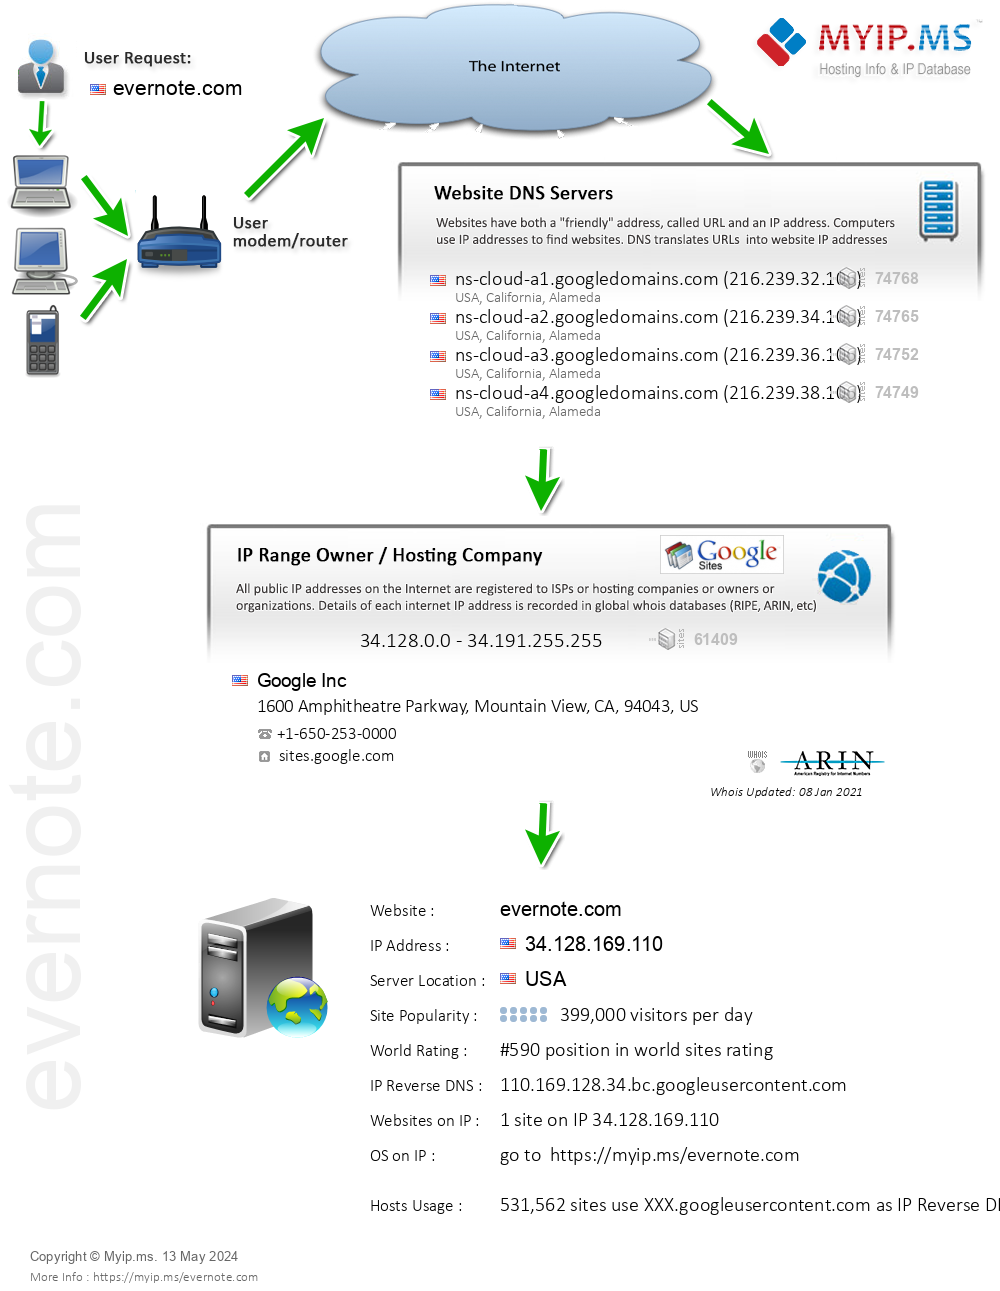 Evernote.com - Website Hosting Visual IP Diagram